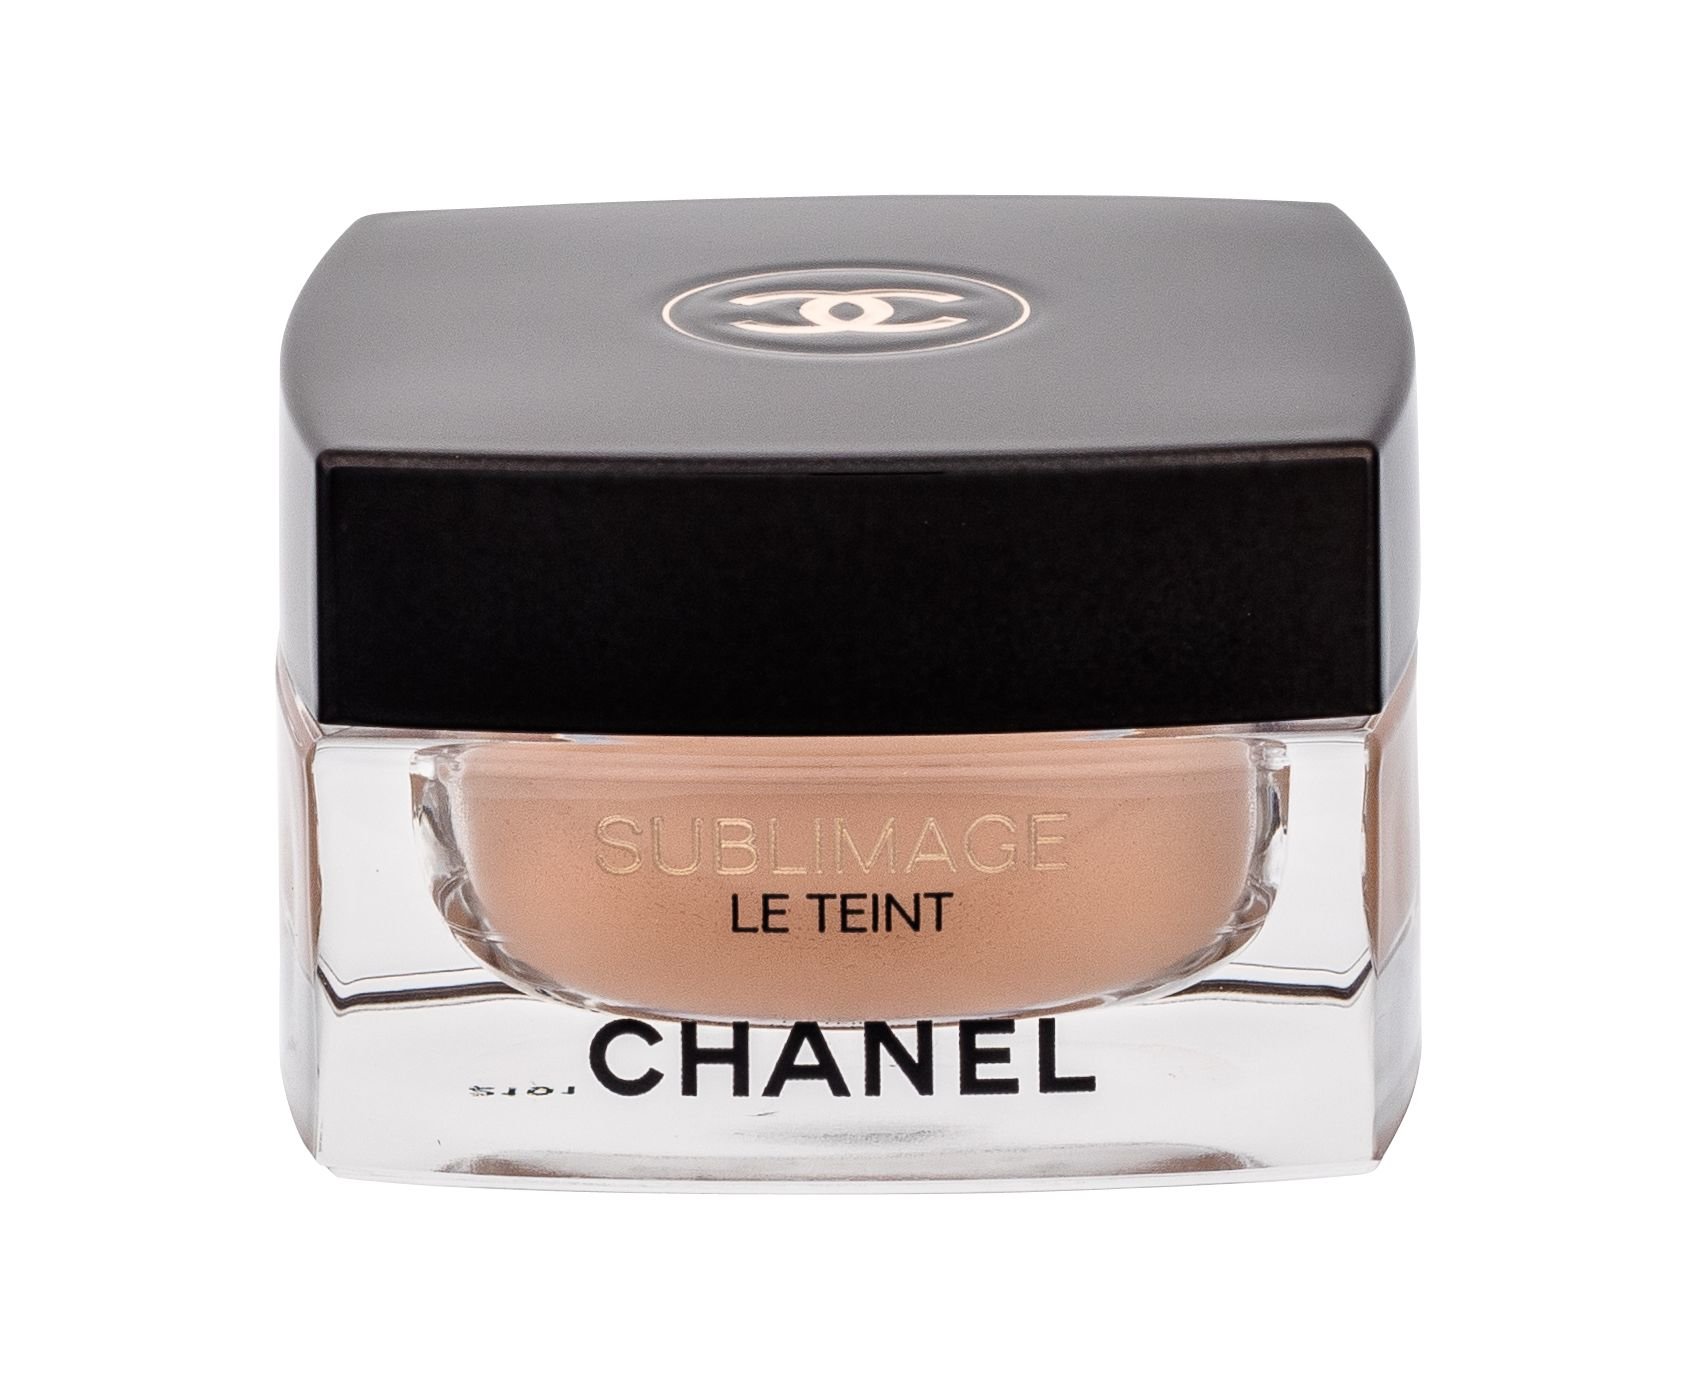 Chanel Sublimage Le Teint makiažo pagrindas